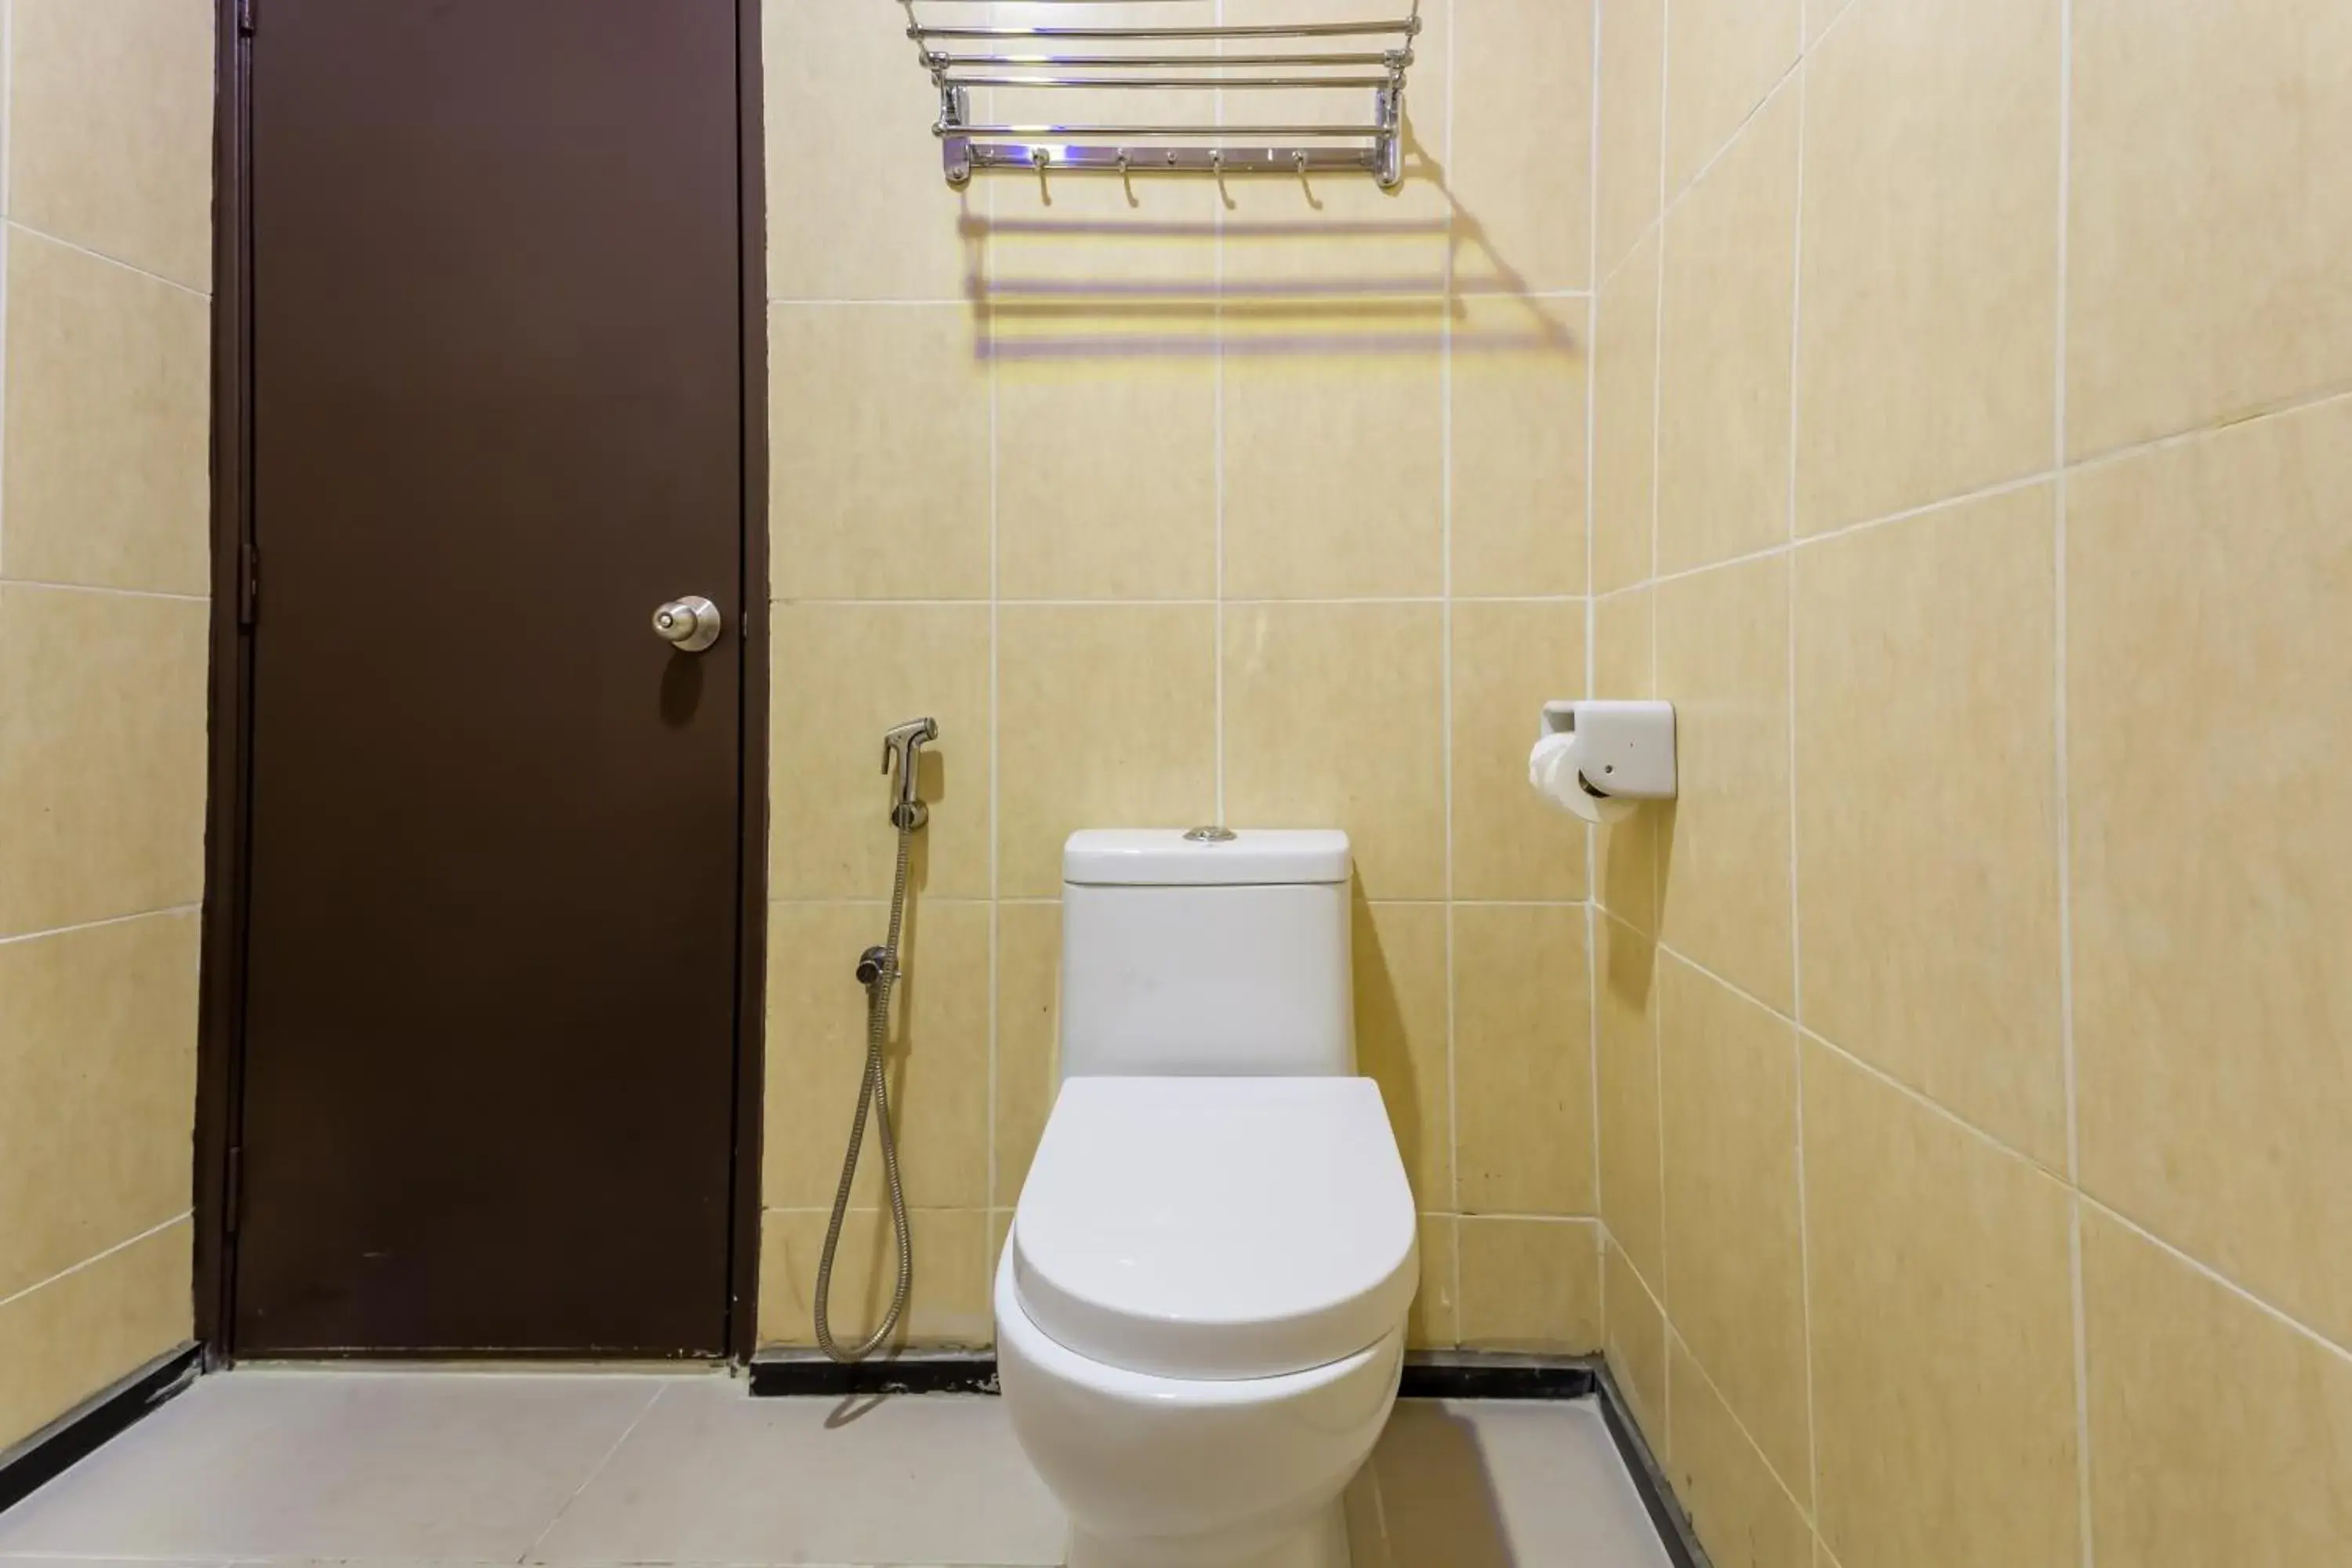 Toilet, Bathroom in Club Dolphin Hotel